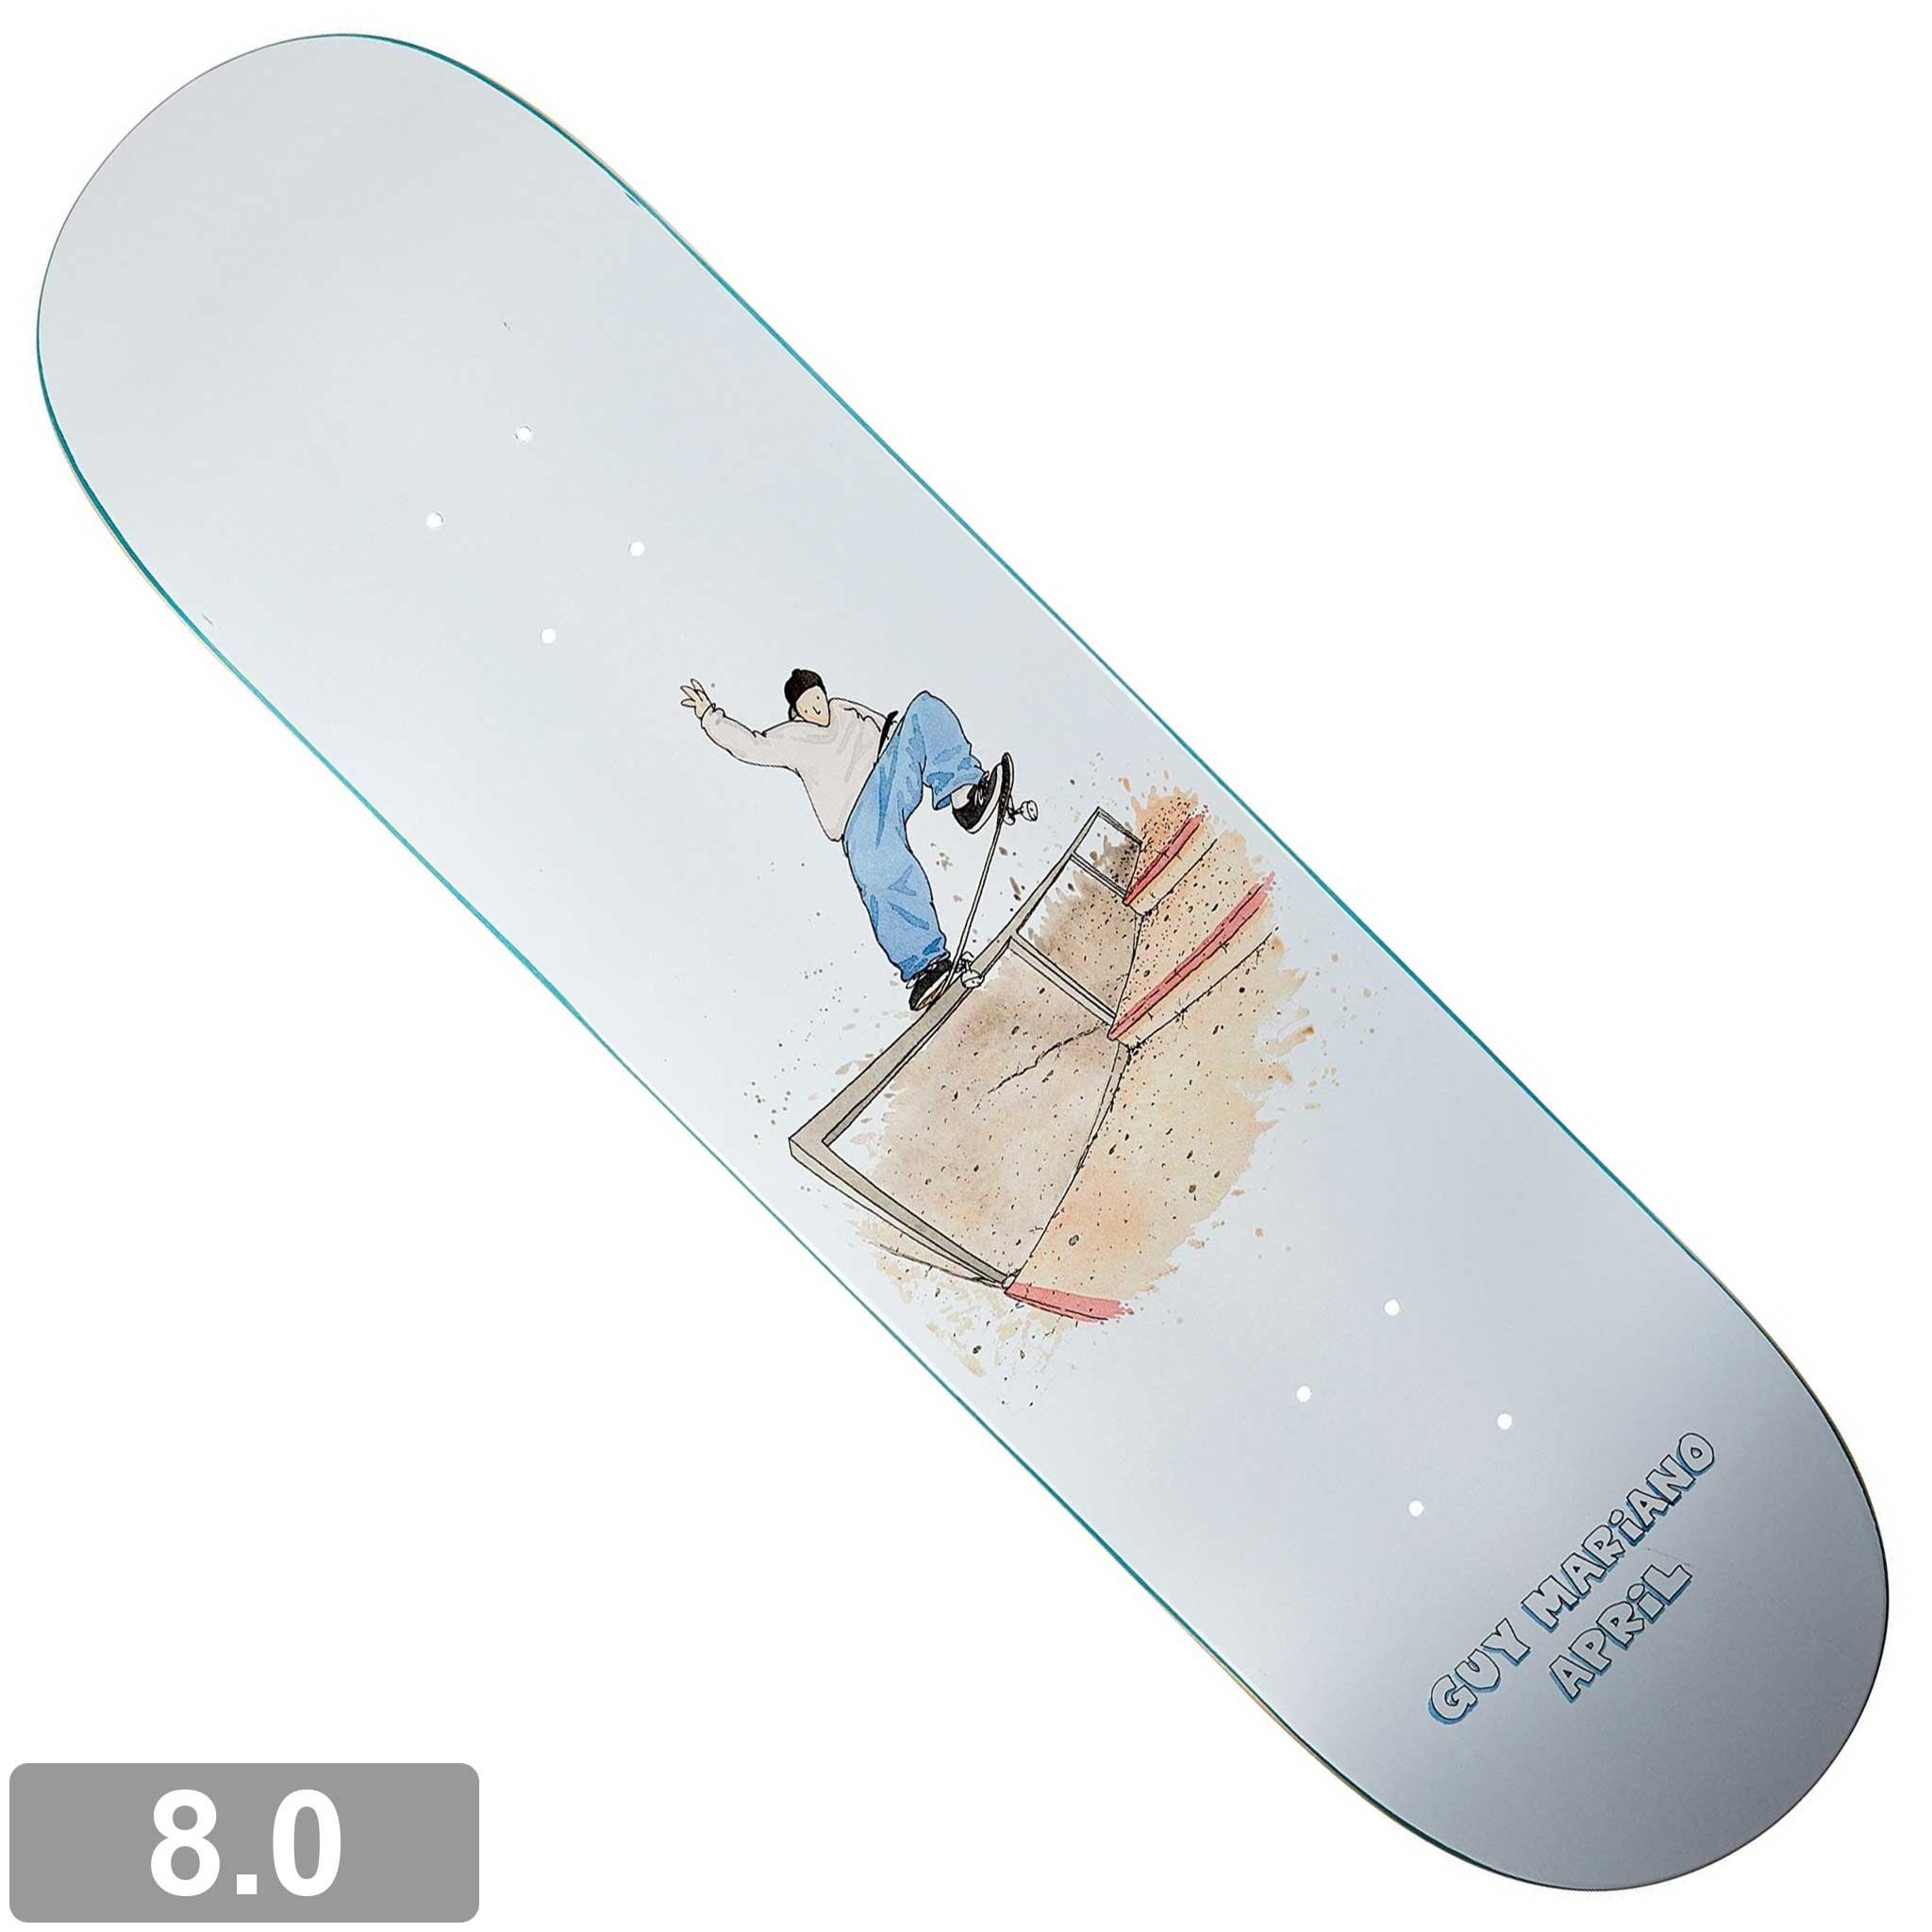 Aprilデッキ8 - スケートボード